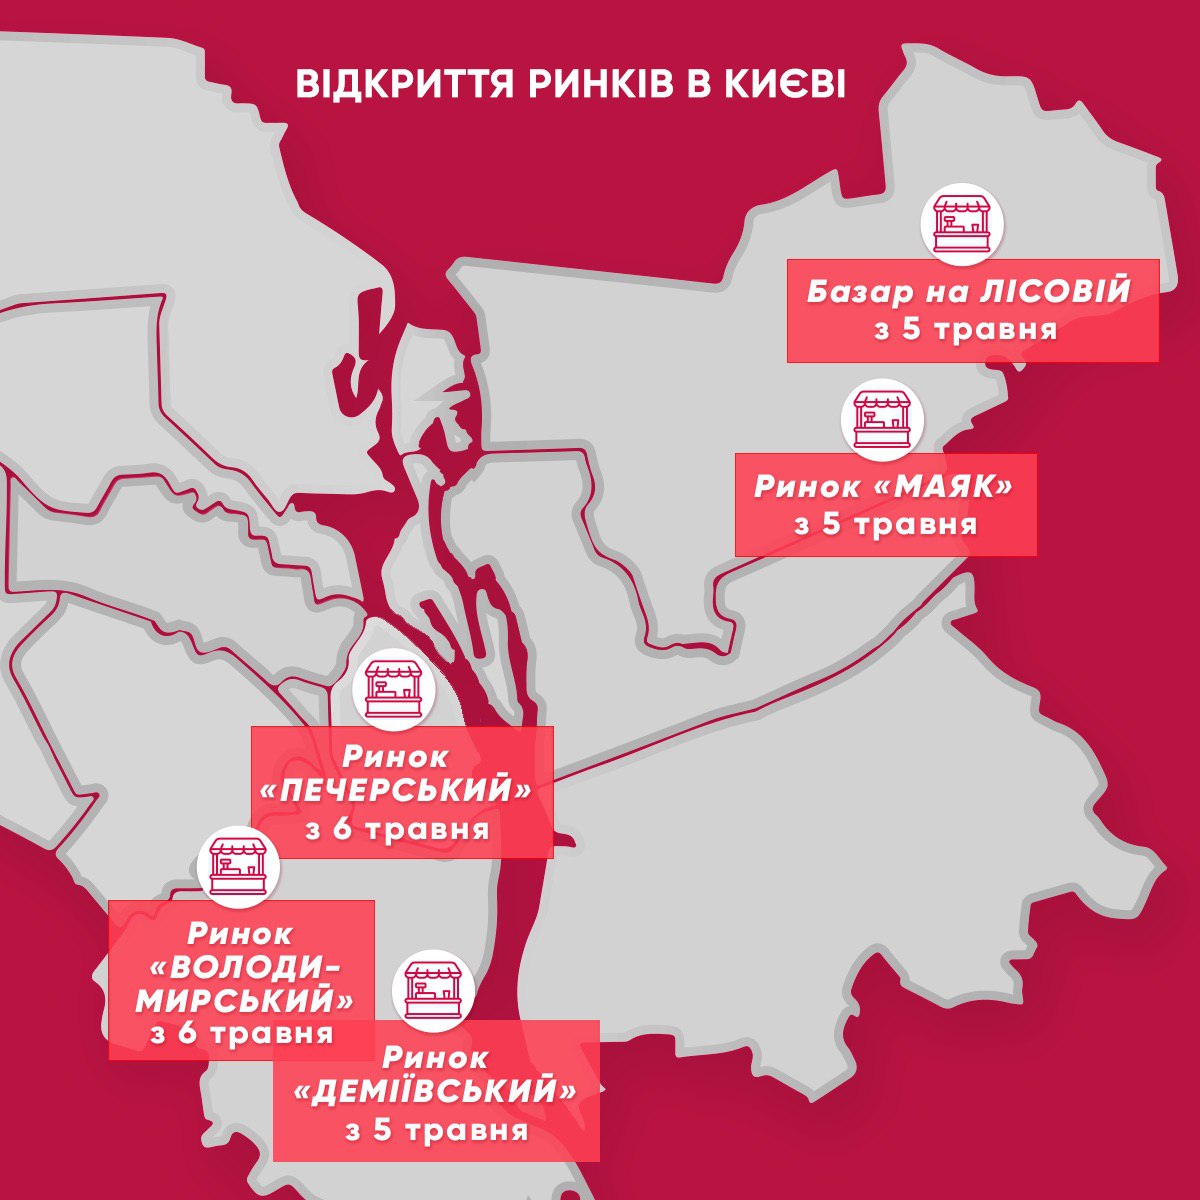 Коронавірус у Києві. Карта: прес-служба Кличка